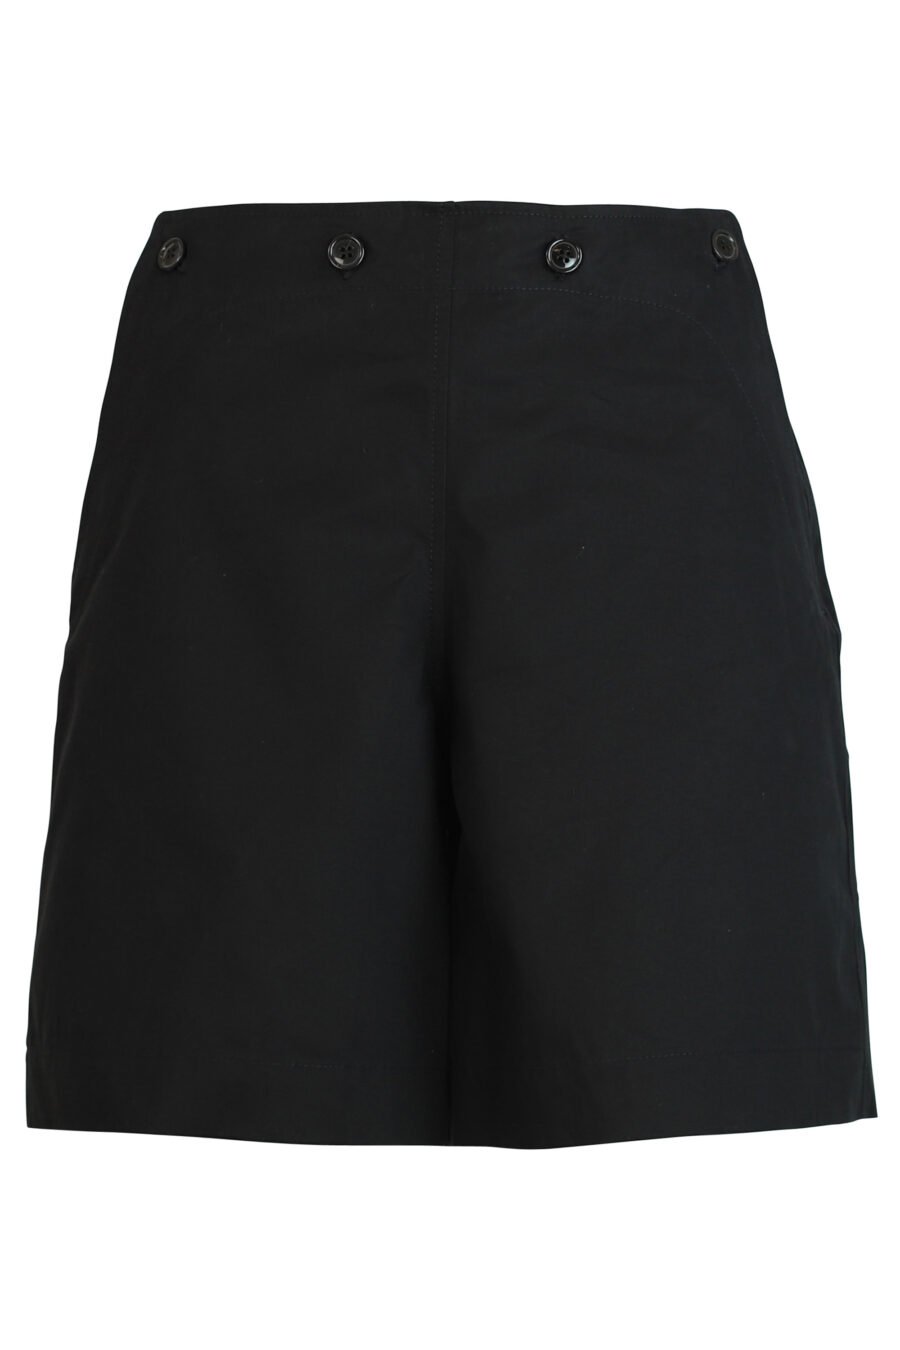 Pantalón negro corto con logo - 3612230419773